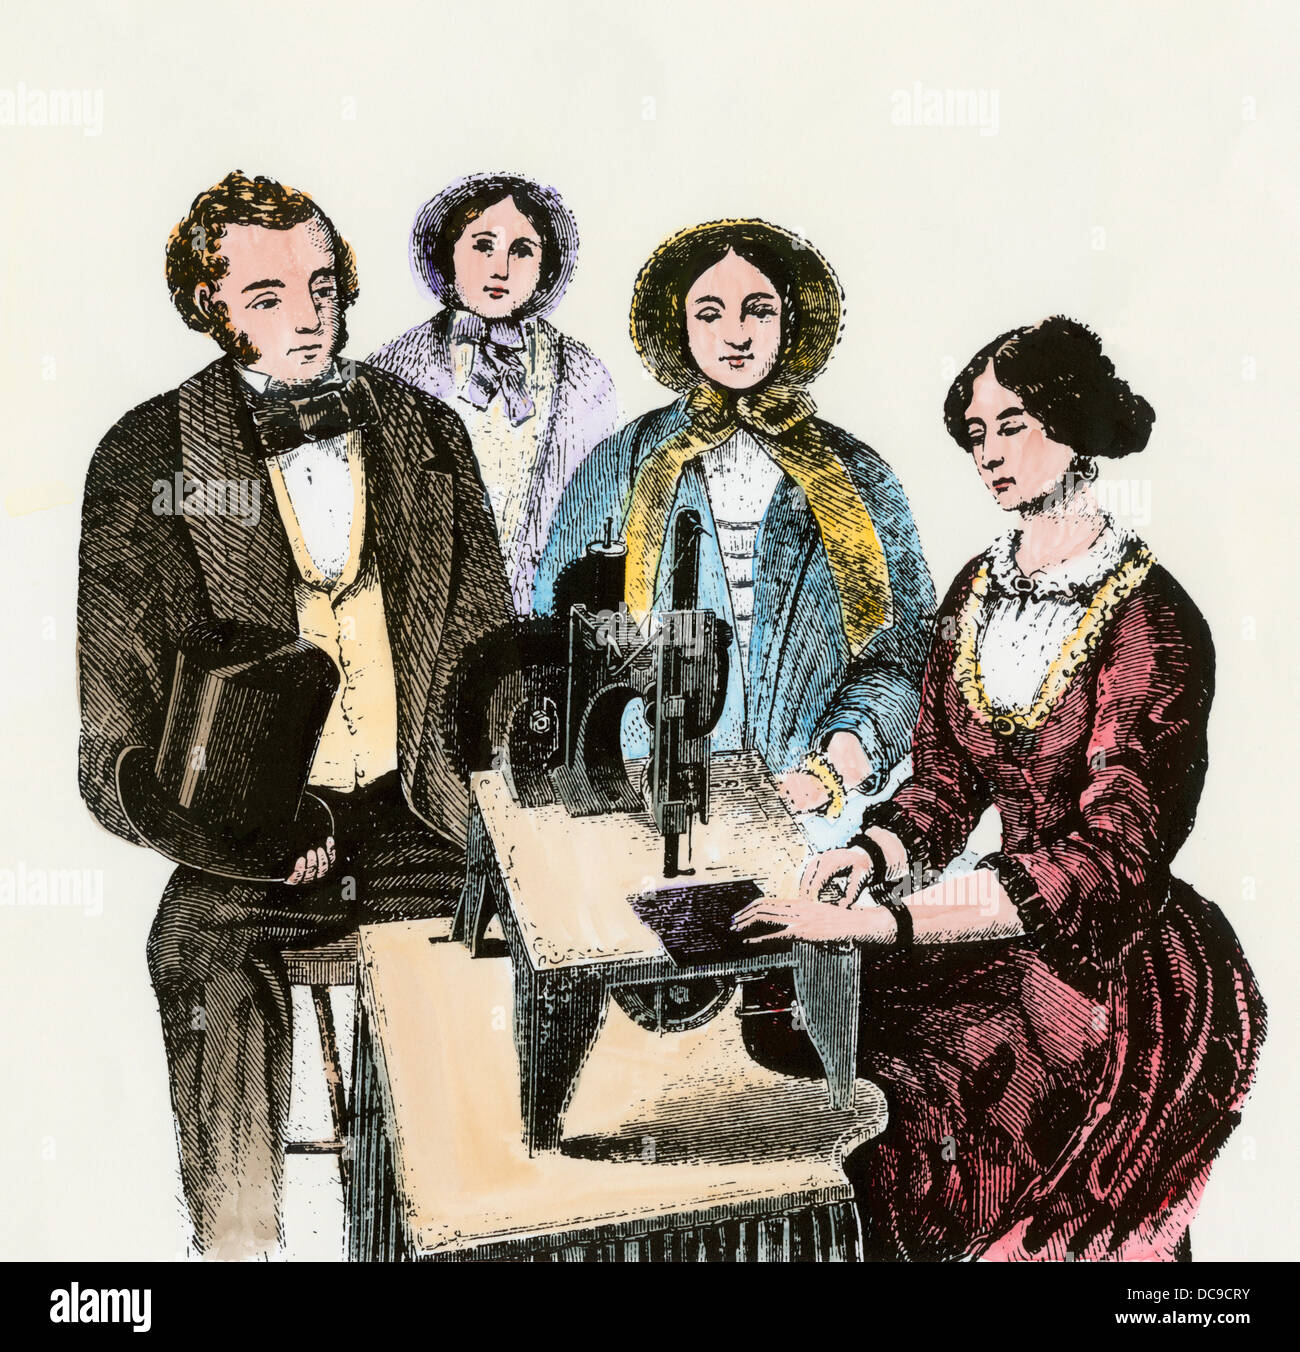 La donna a dimostrazione del cantante prima macchina da cucire, 1850s. Colorate a mano la xilografia Foto Stock